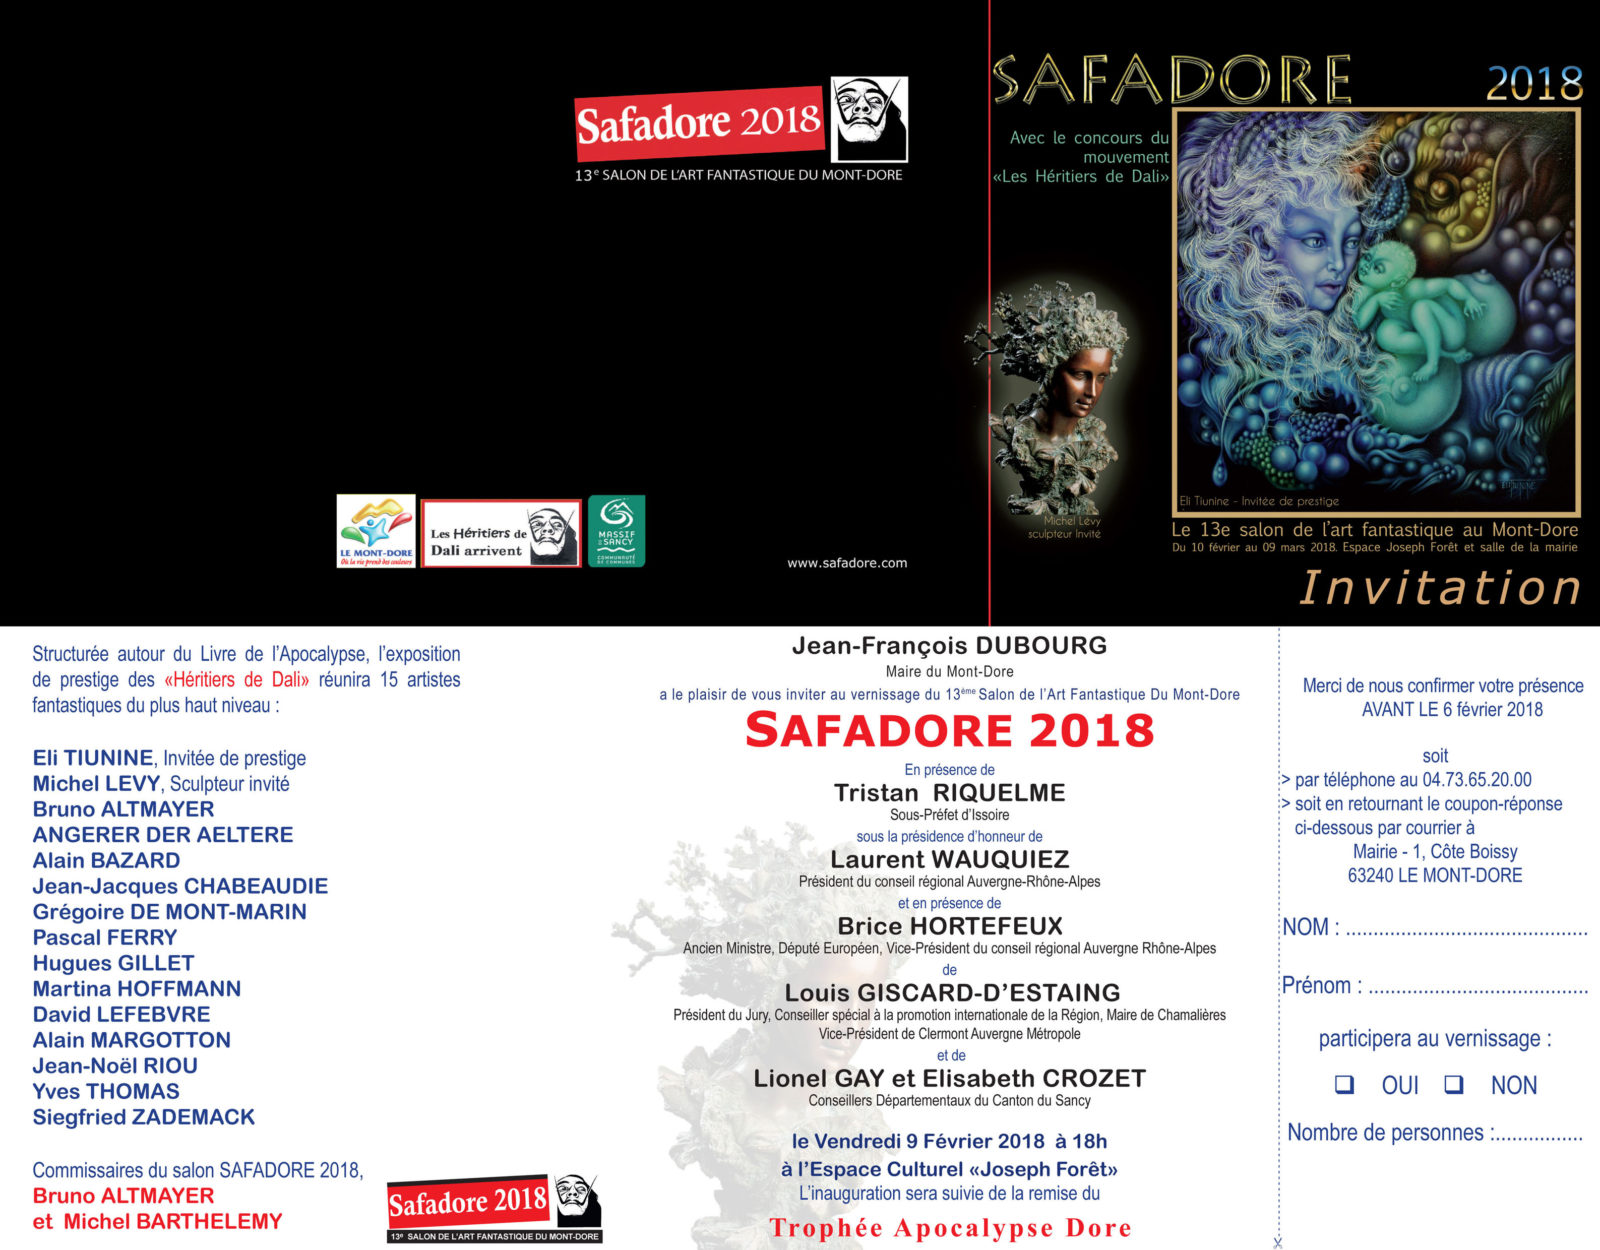 Safadore 2018 - Salon de l'art de l'imaginaire au Mont-Dore -Invitation